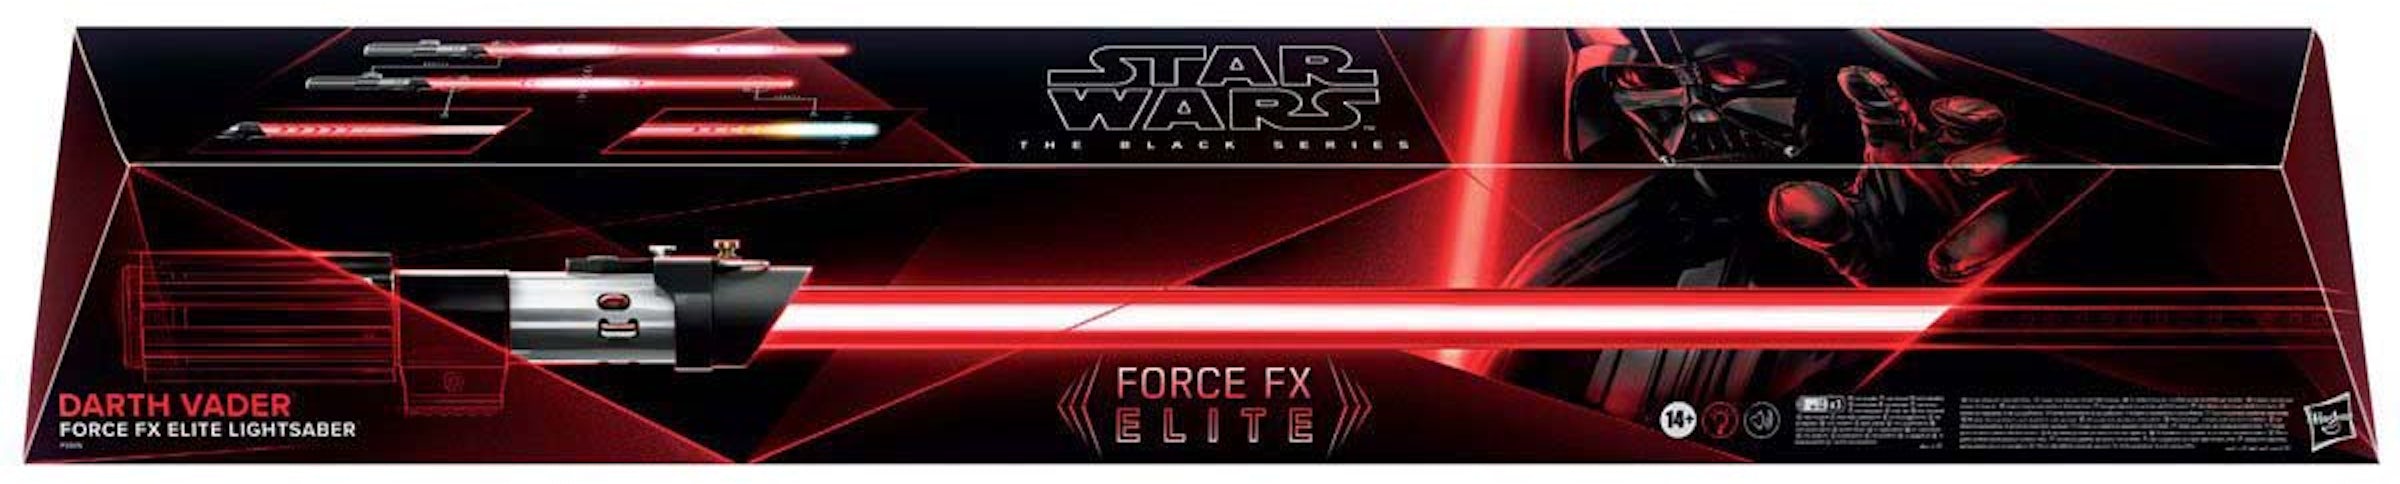 Hasbro Star Wars The Black Series Luke Skywalker Force FX Elite Lightsaber